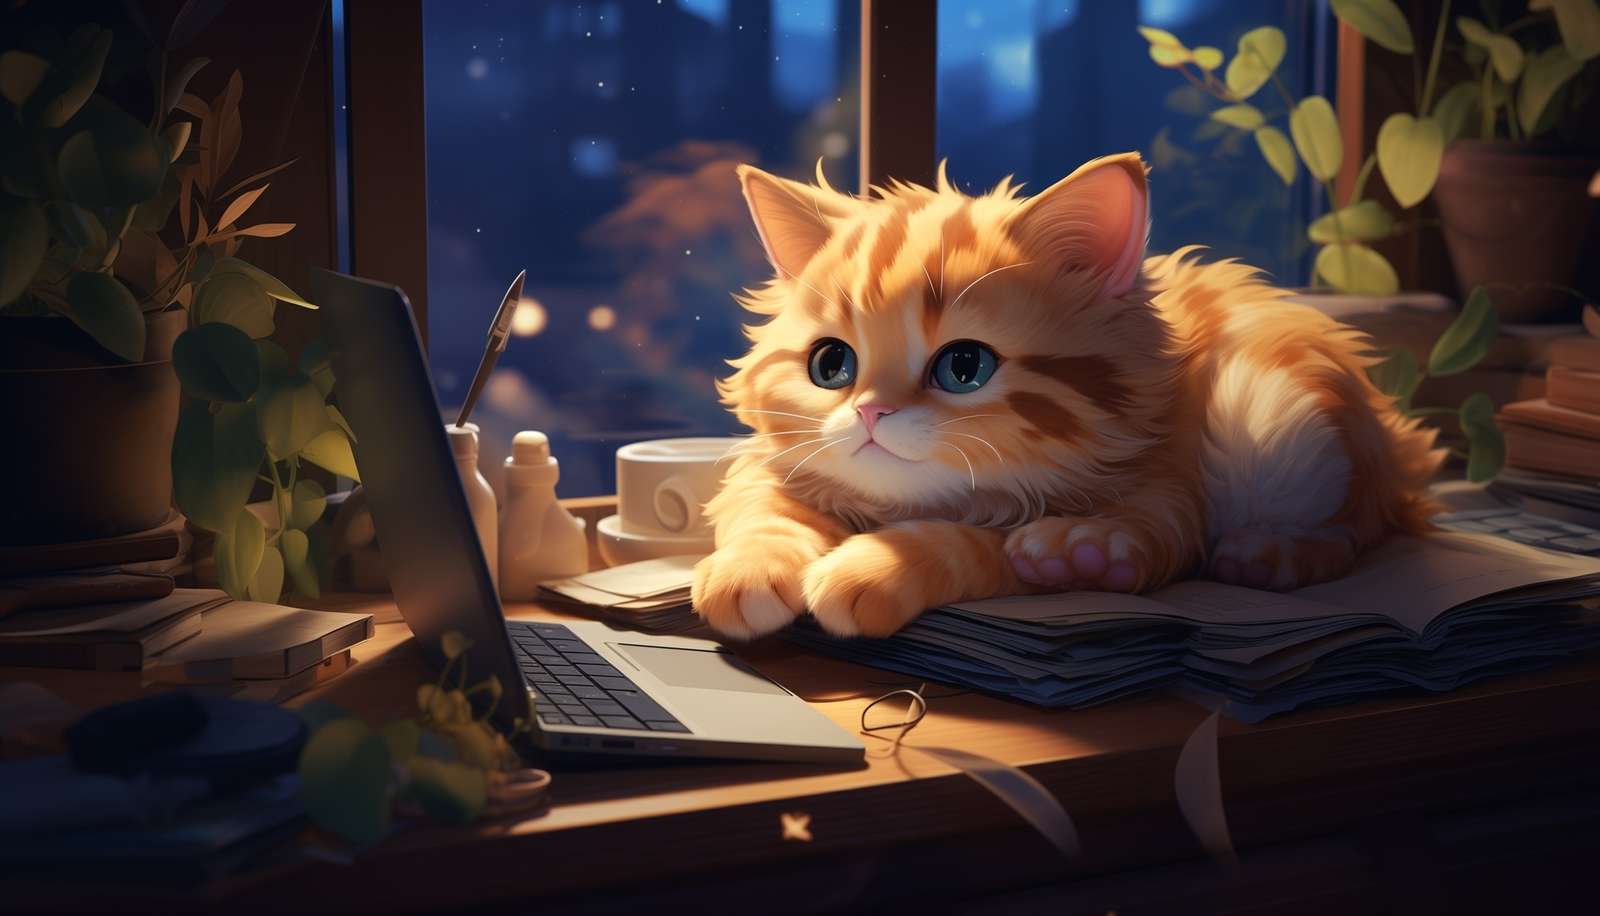 Ein rötliches Kätzchen, das auf einem Buch neben einem Laptop liegt Online-Puzzle